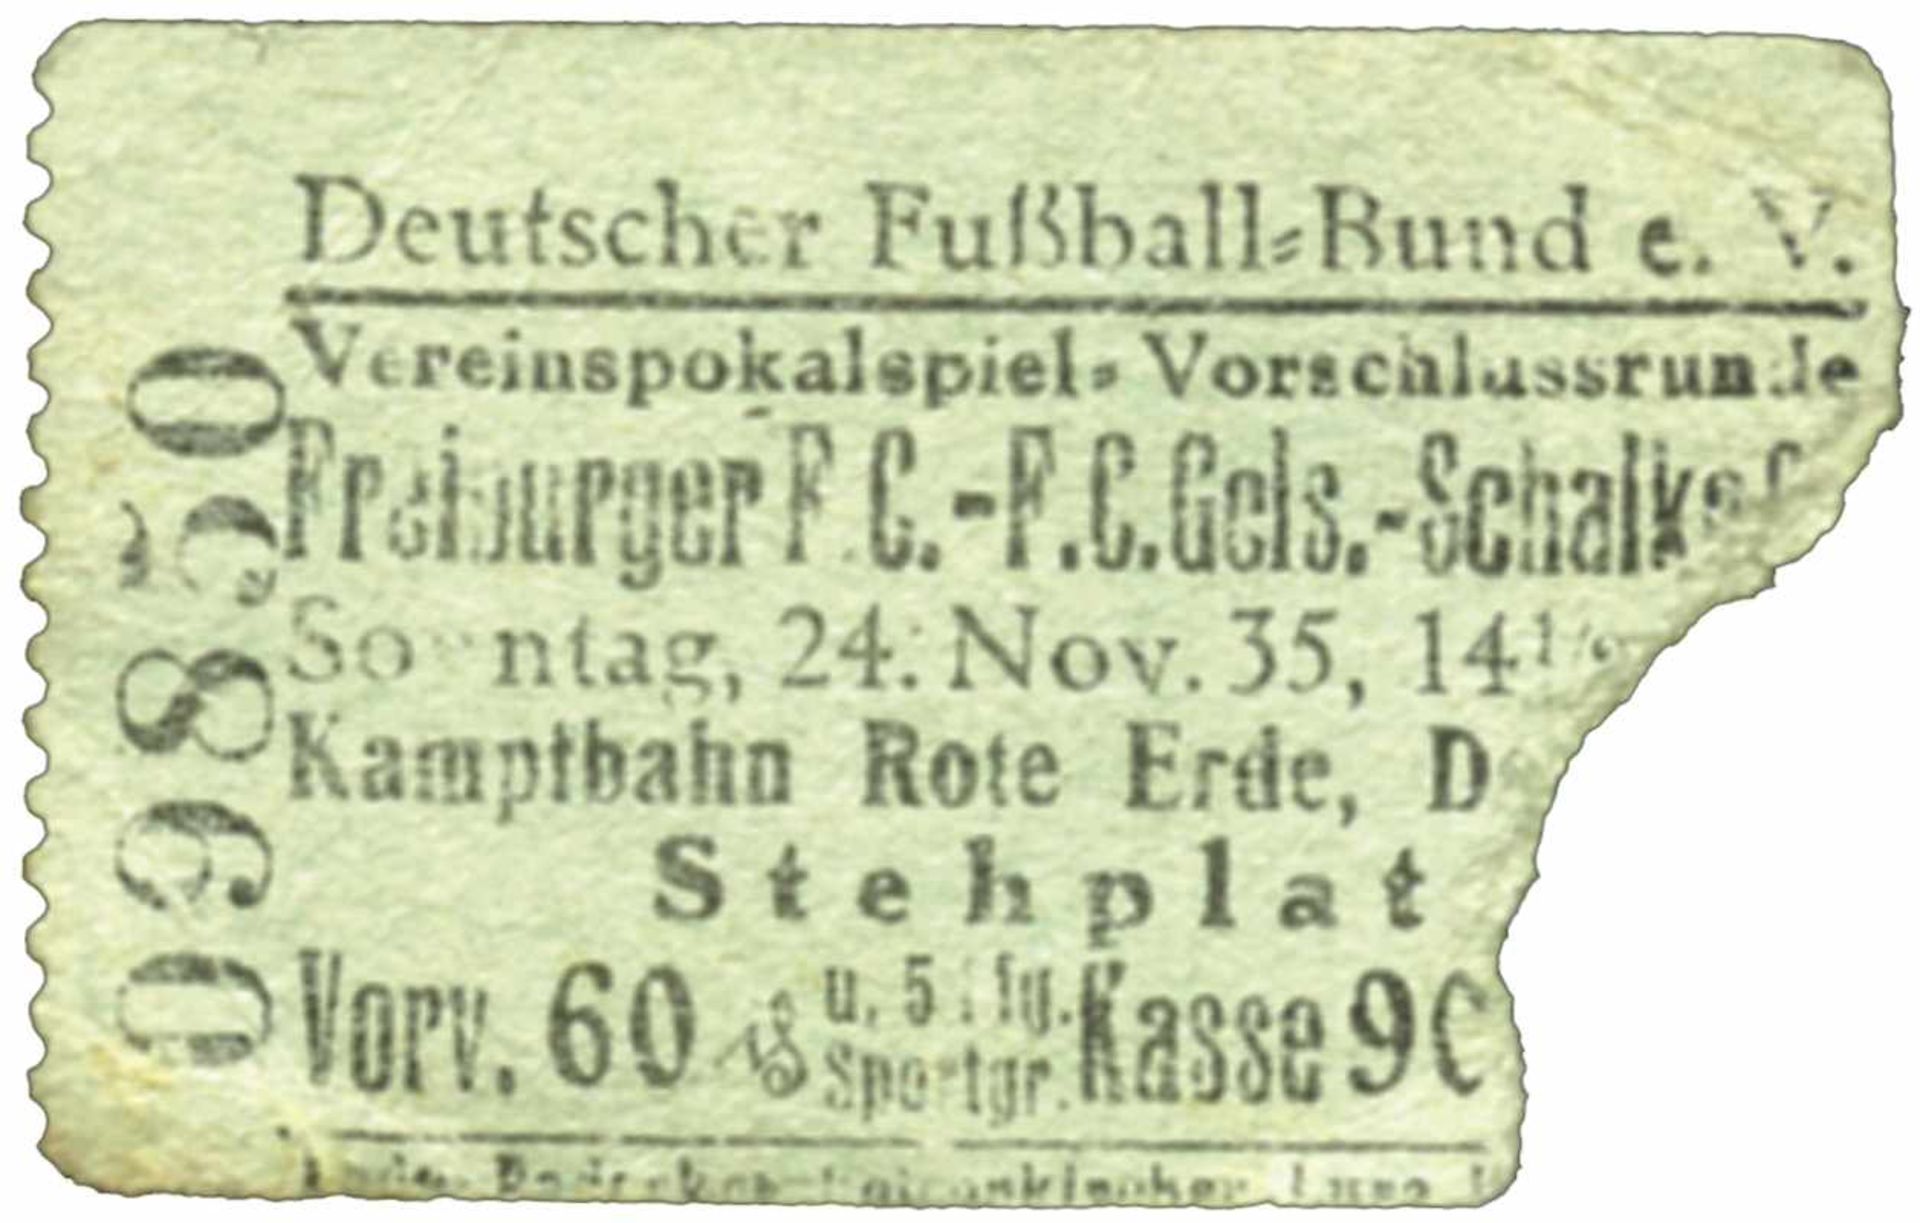 German Cup Ticket 1935 Schalke 04 v Freiburger FC -Eintrittskarte P1935 - Tschammer-Pokal-Spiel